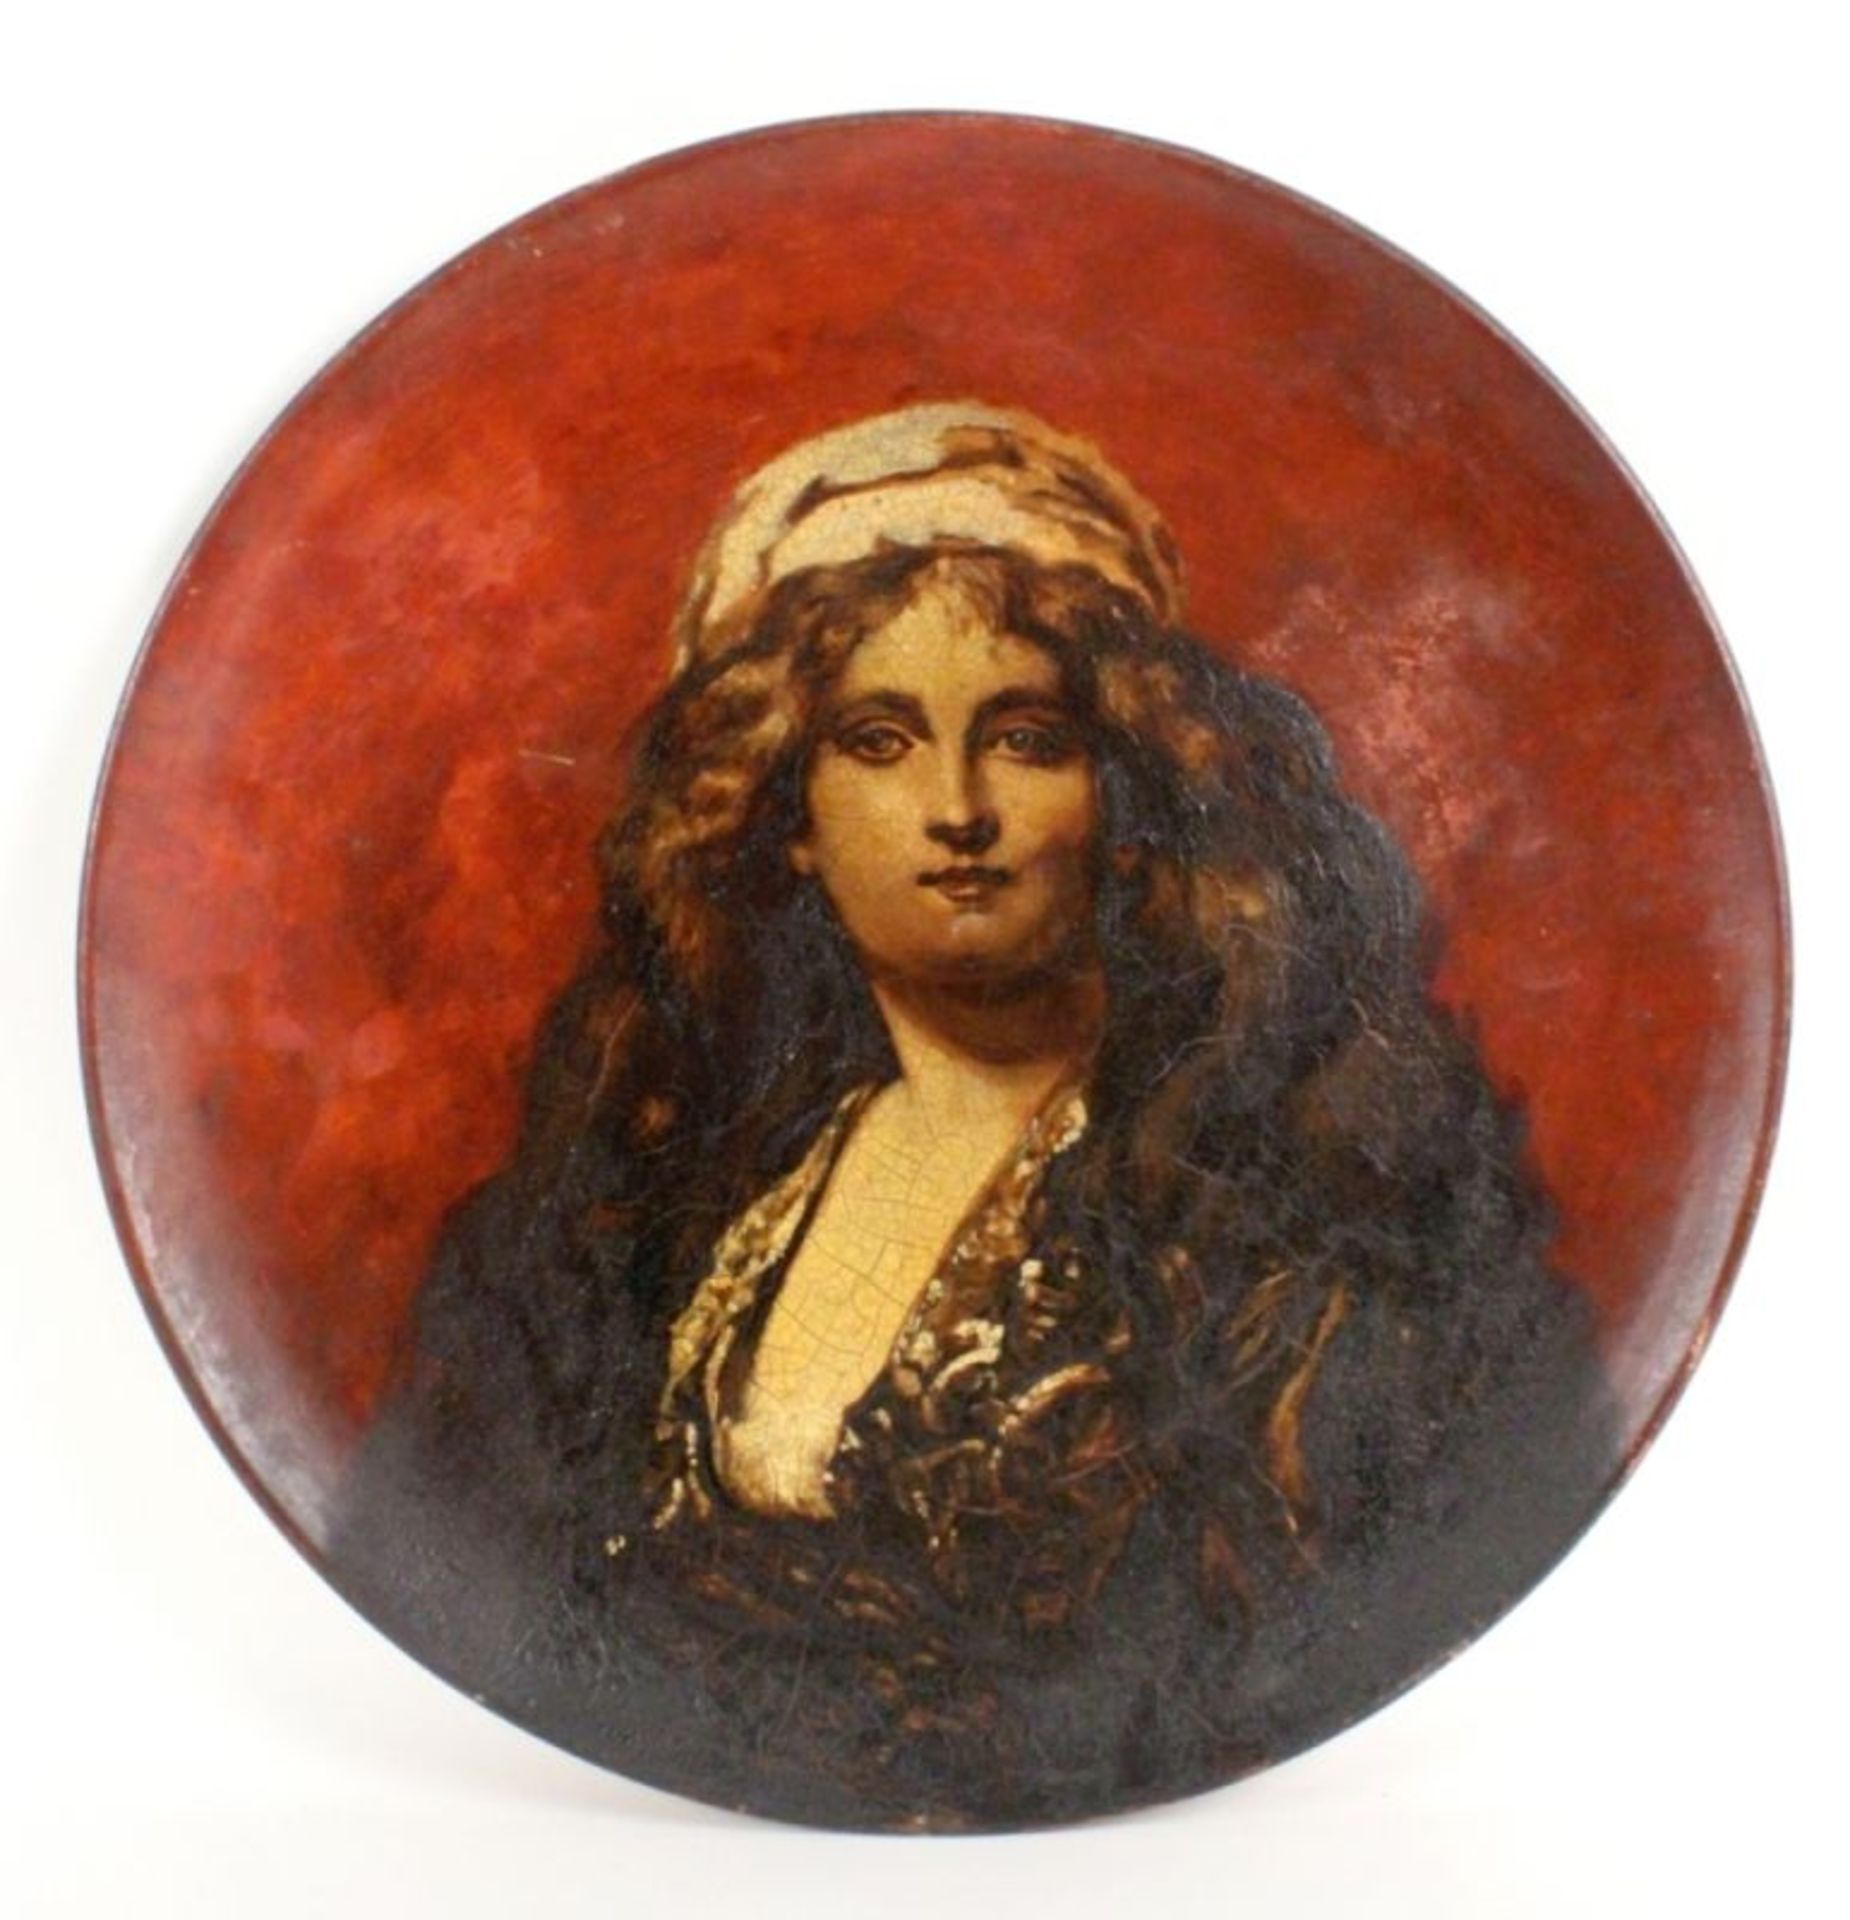 GROSSER WANDTELLERum 1900 Keramik, farbig bemalt mit Portrait einer Orientalin. Rötlicher Scherben